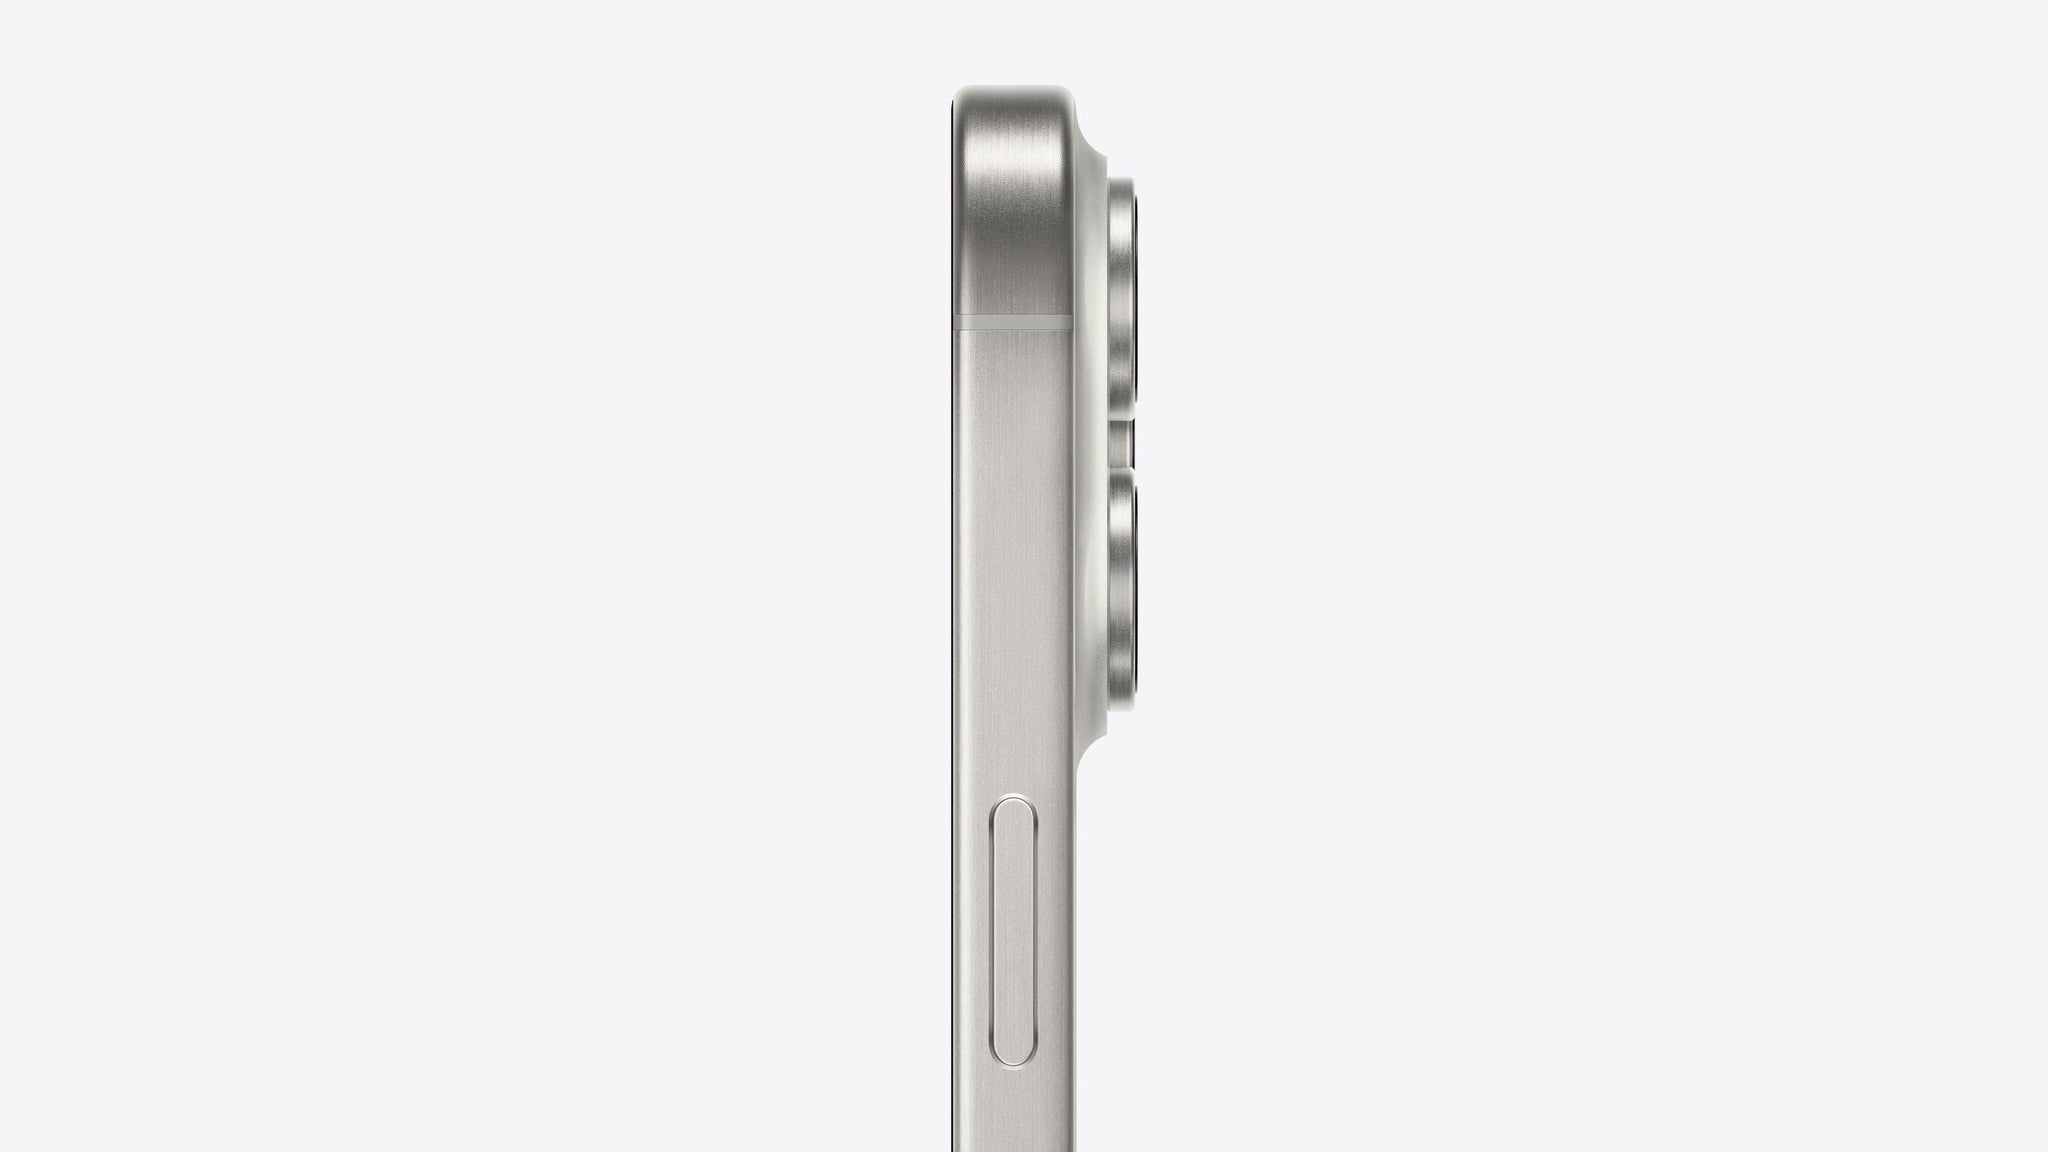 Buy iPhone 15 Pro Max 512GB White Titanium - Apple (PH)